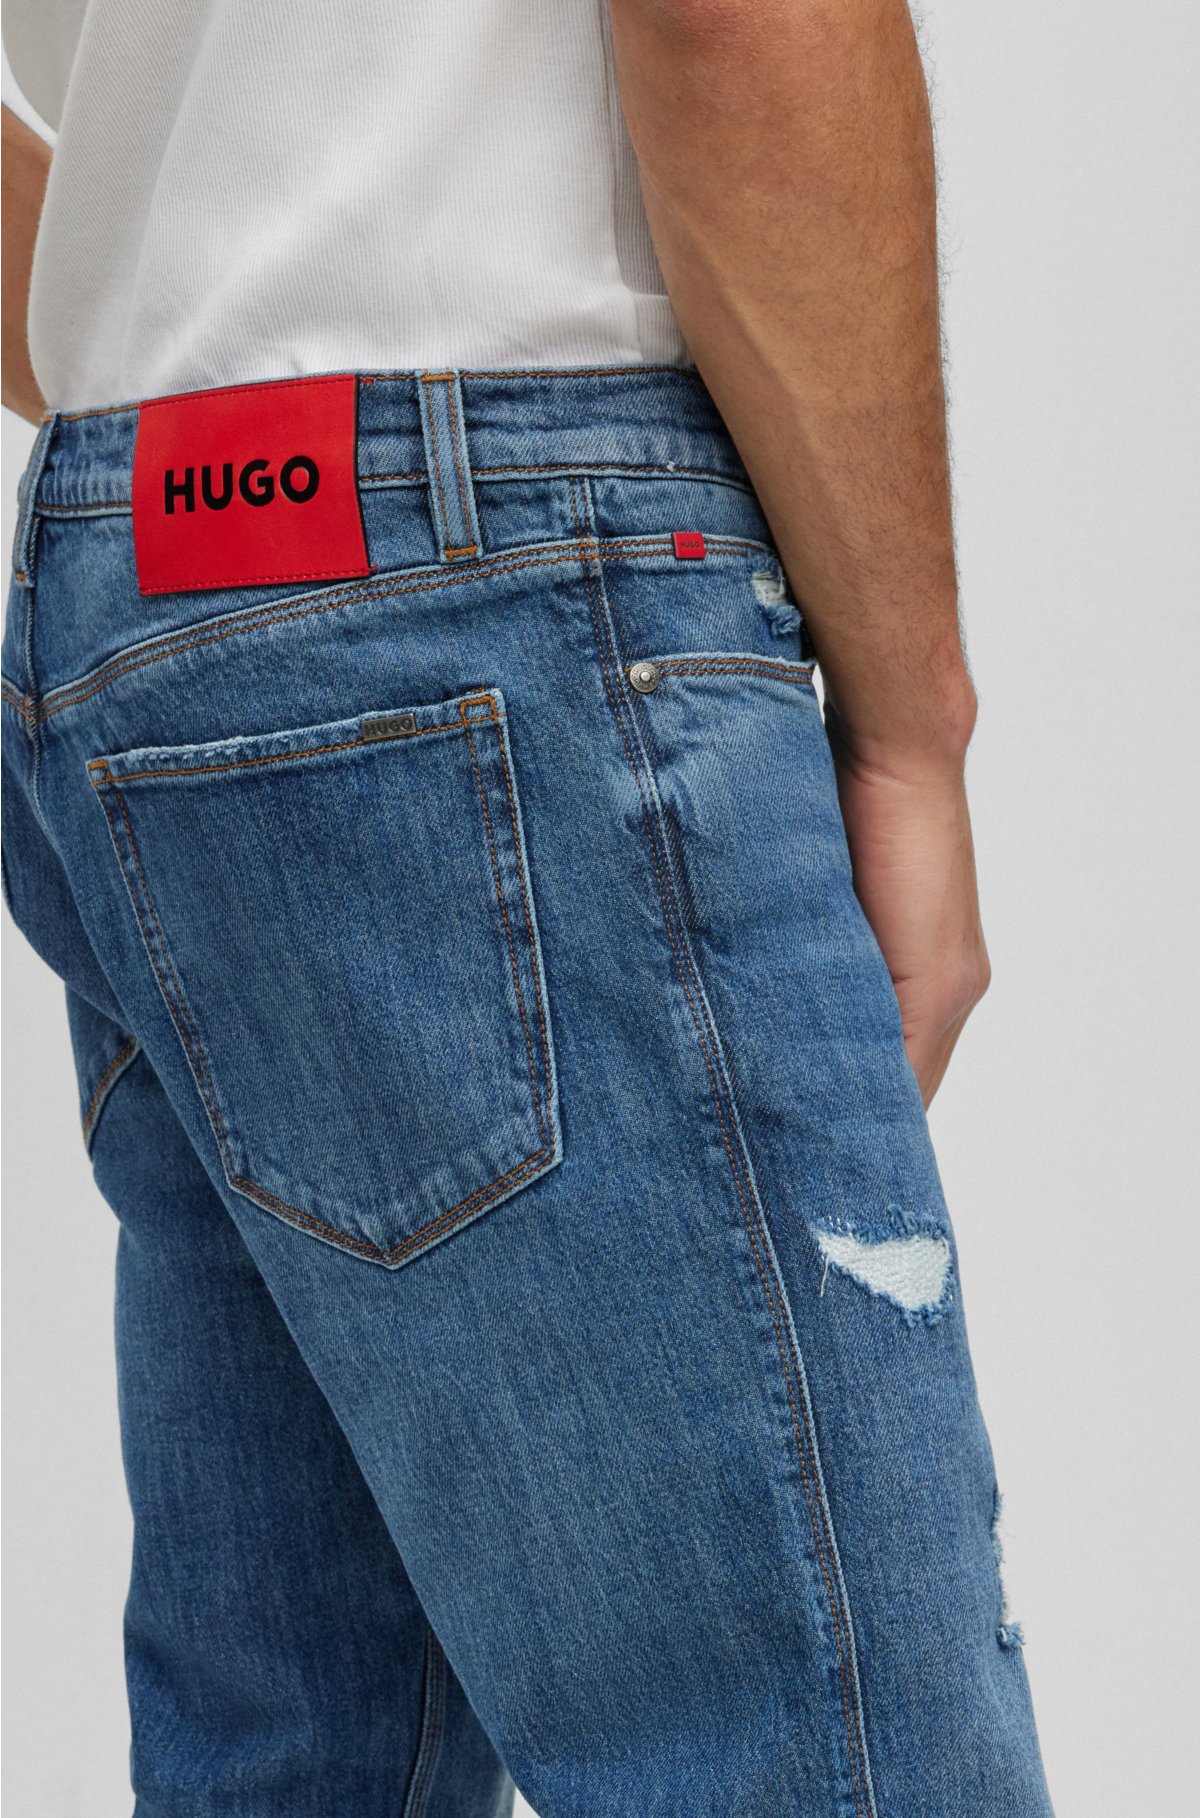 HUGO - jeans in blue denim